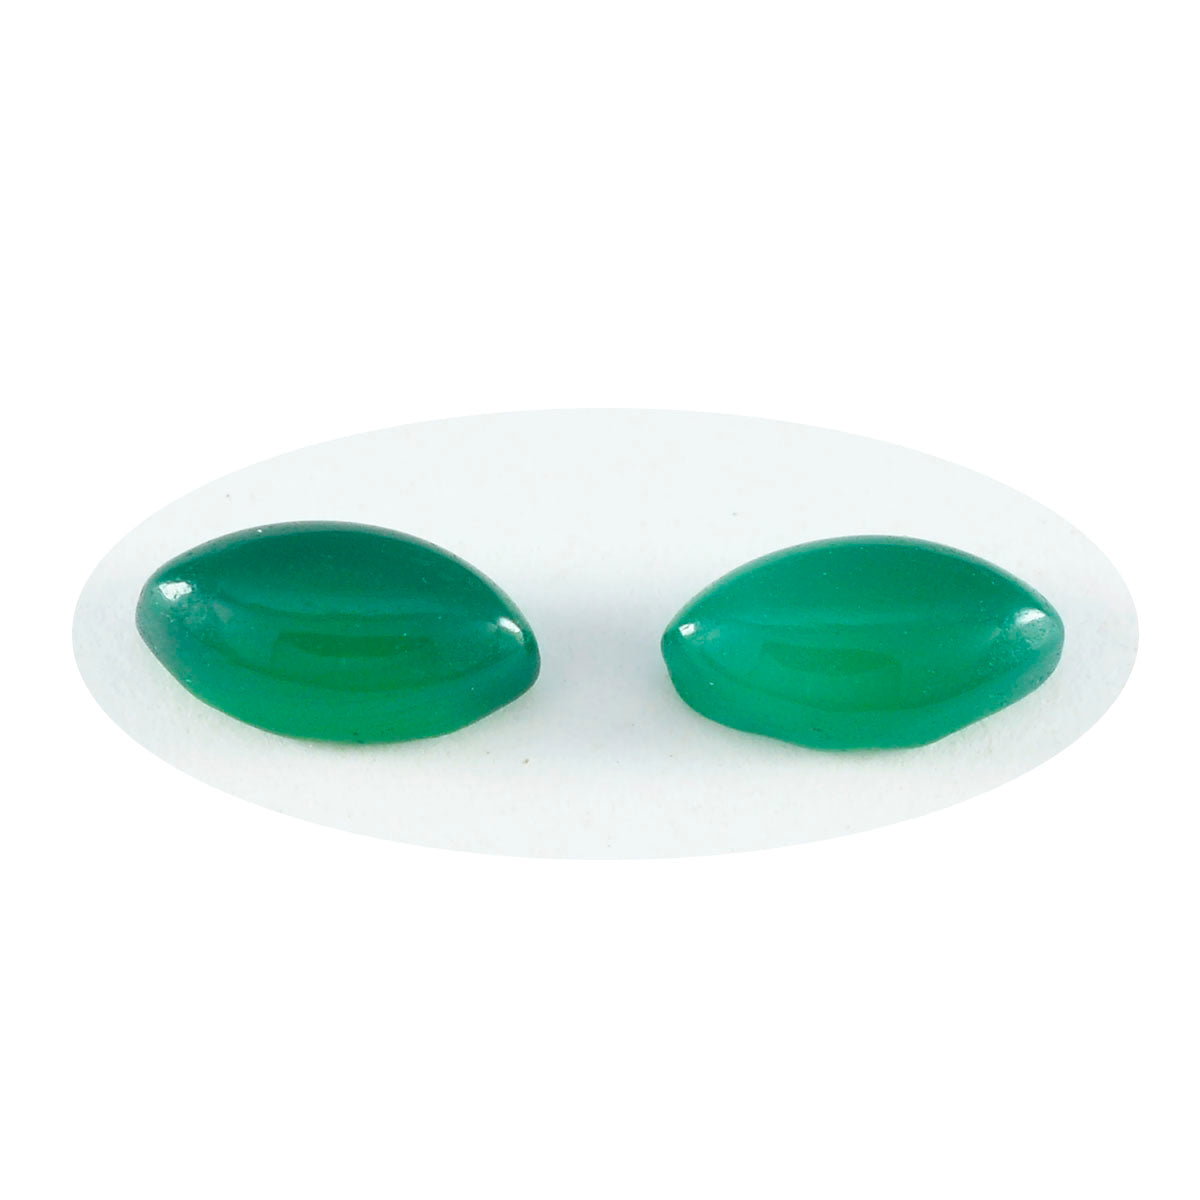 Riyogems 1 Stück grüner Onyx-Cabochon, 7 x 14 mm, Marquise-Form, lose Edelsteine in AAA-Qualität